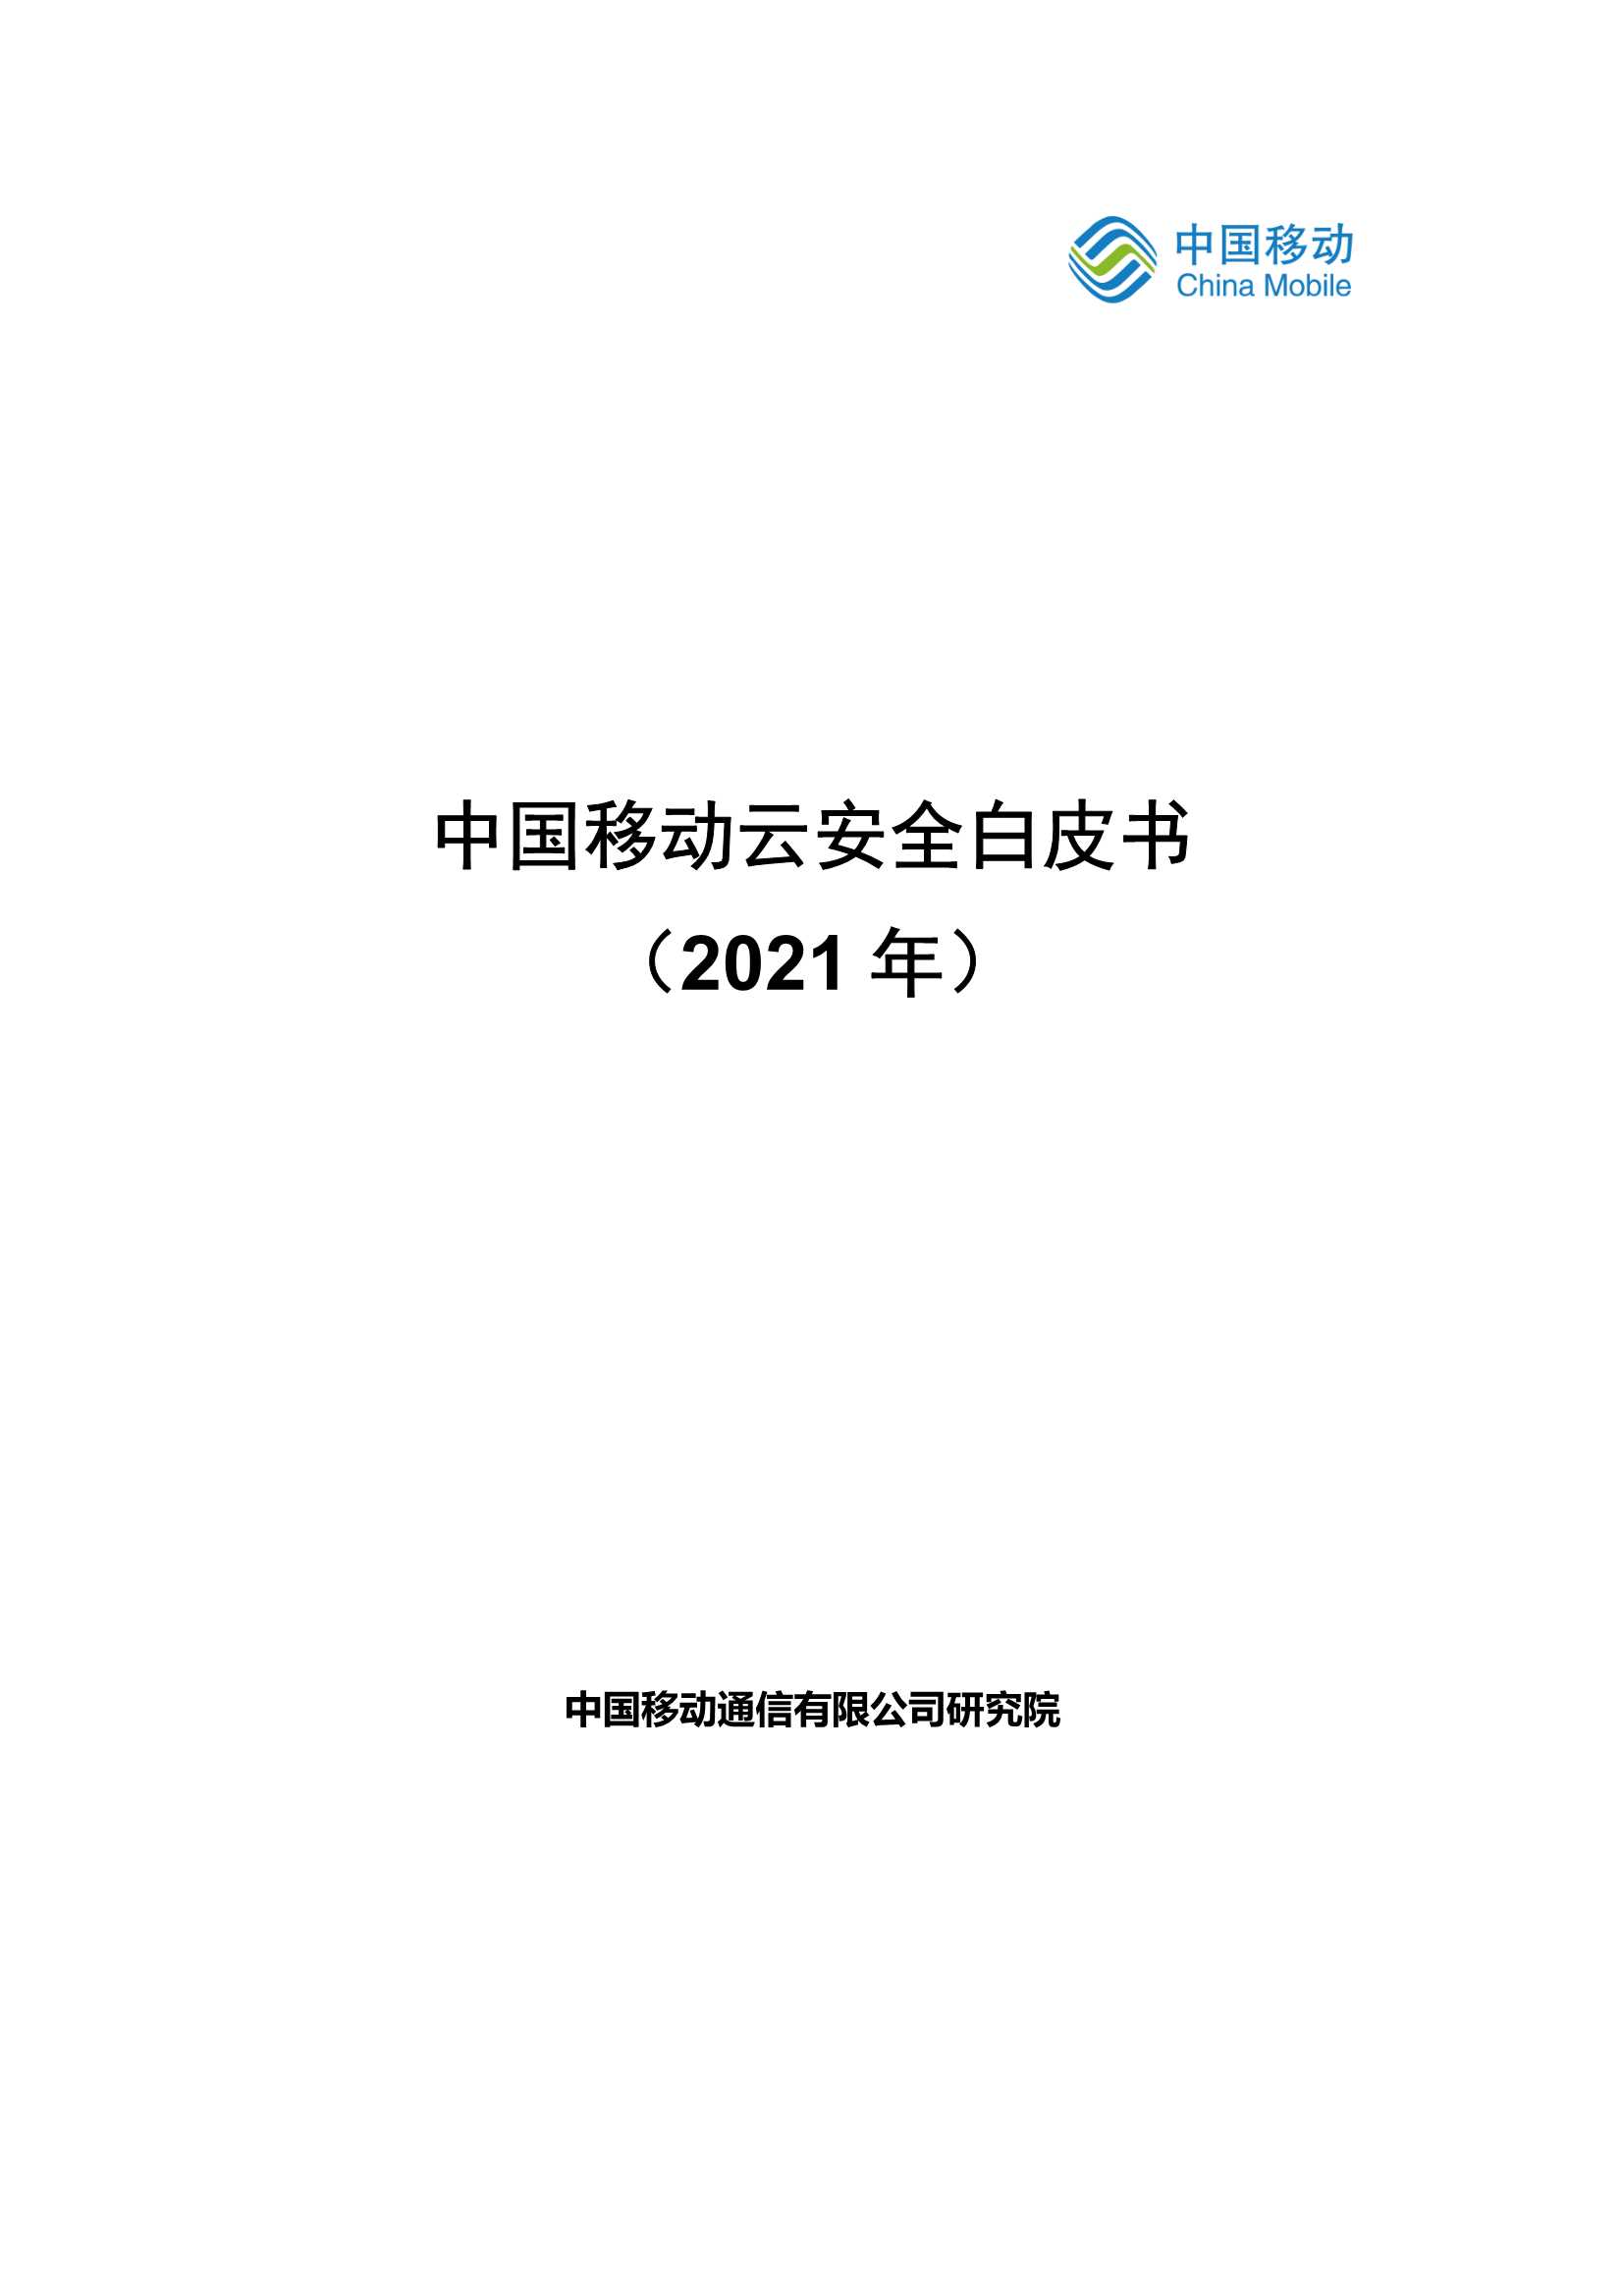 中国移动-中国移动云安全白皮书-2021.05-33页